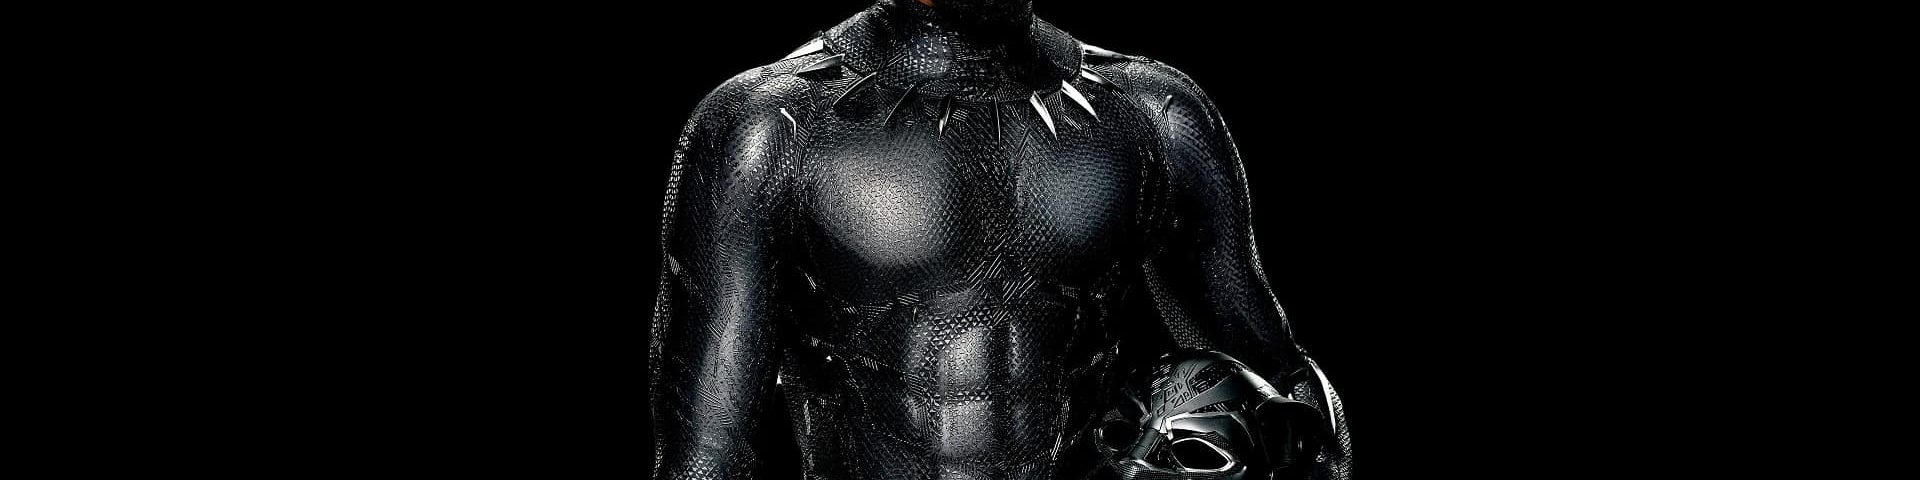 Morto Chadwick Boseman: addio al protagonista di Black Panther